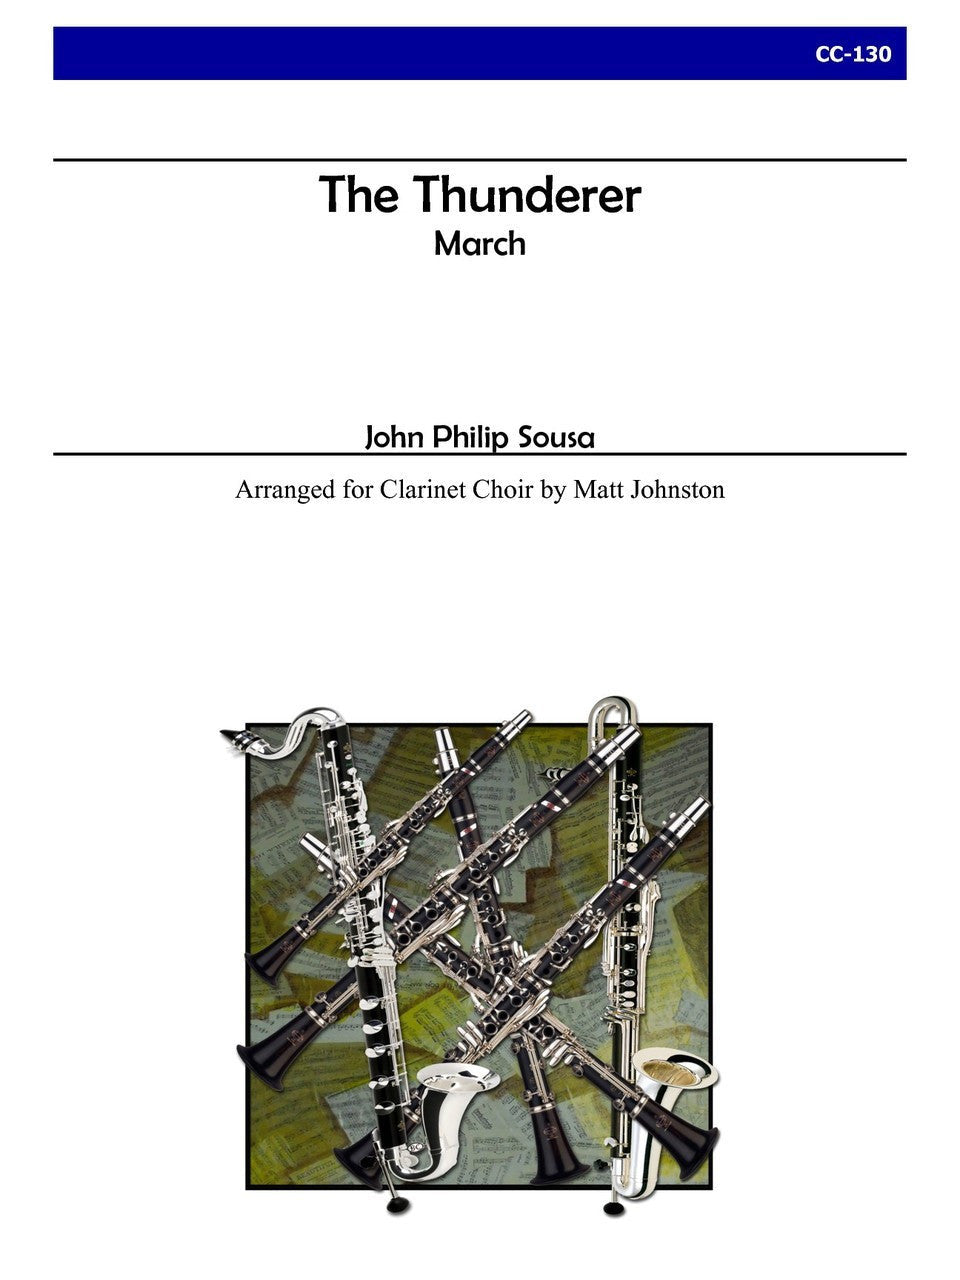 Sousa (arr. Matt Johnston) - The Thunderer for Clarinet Choir